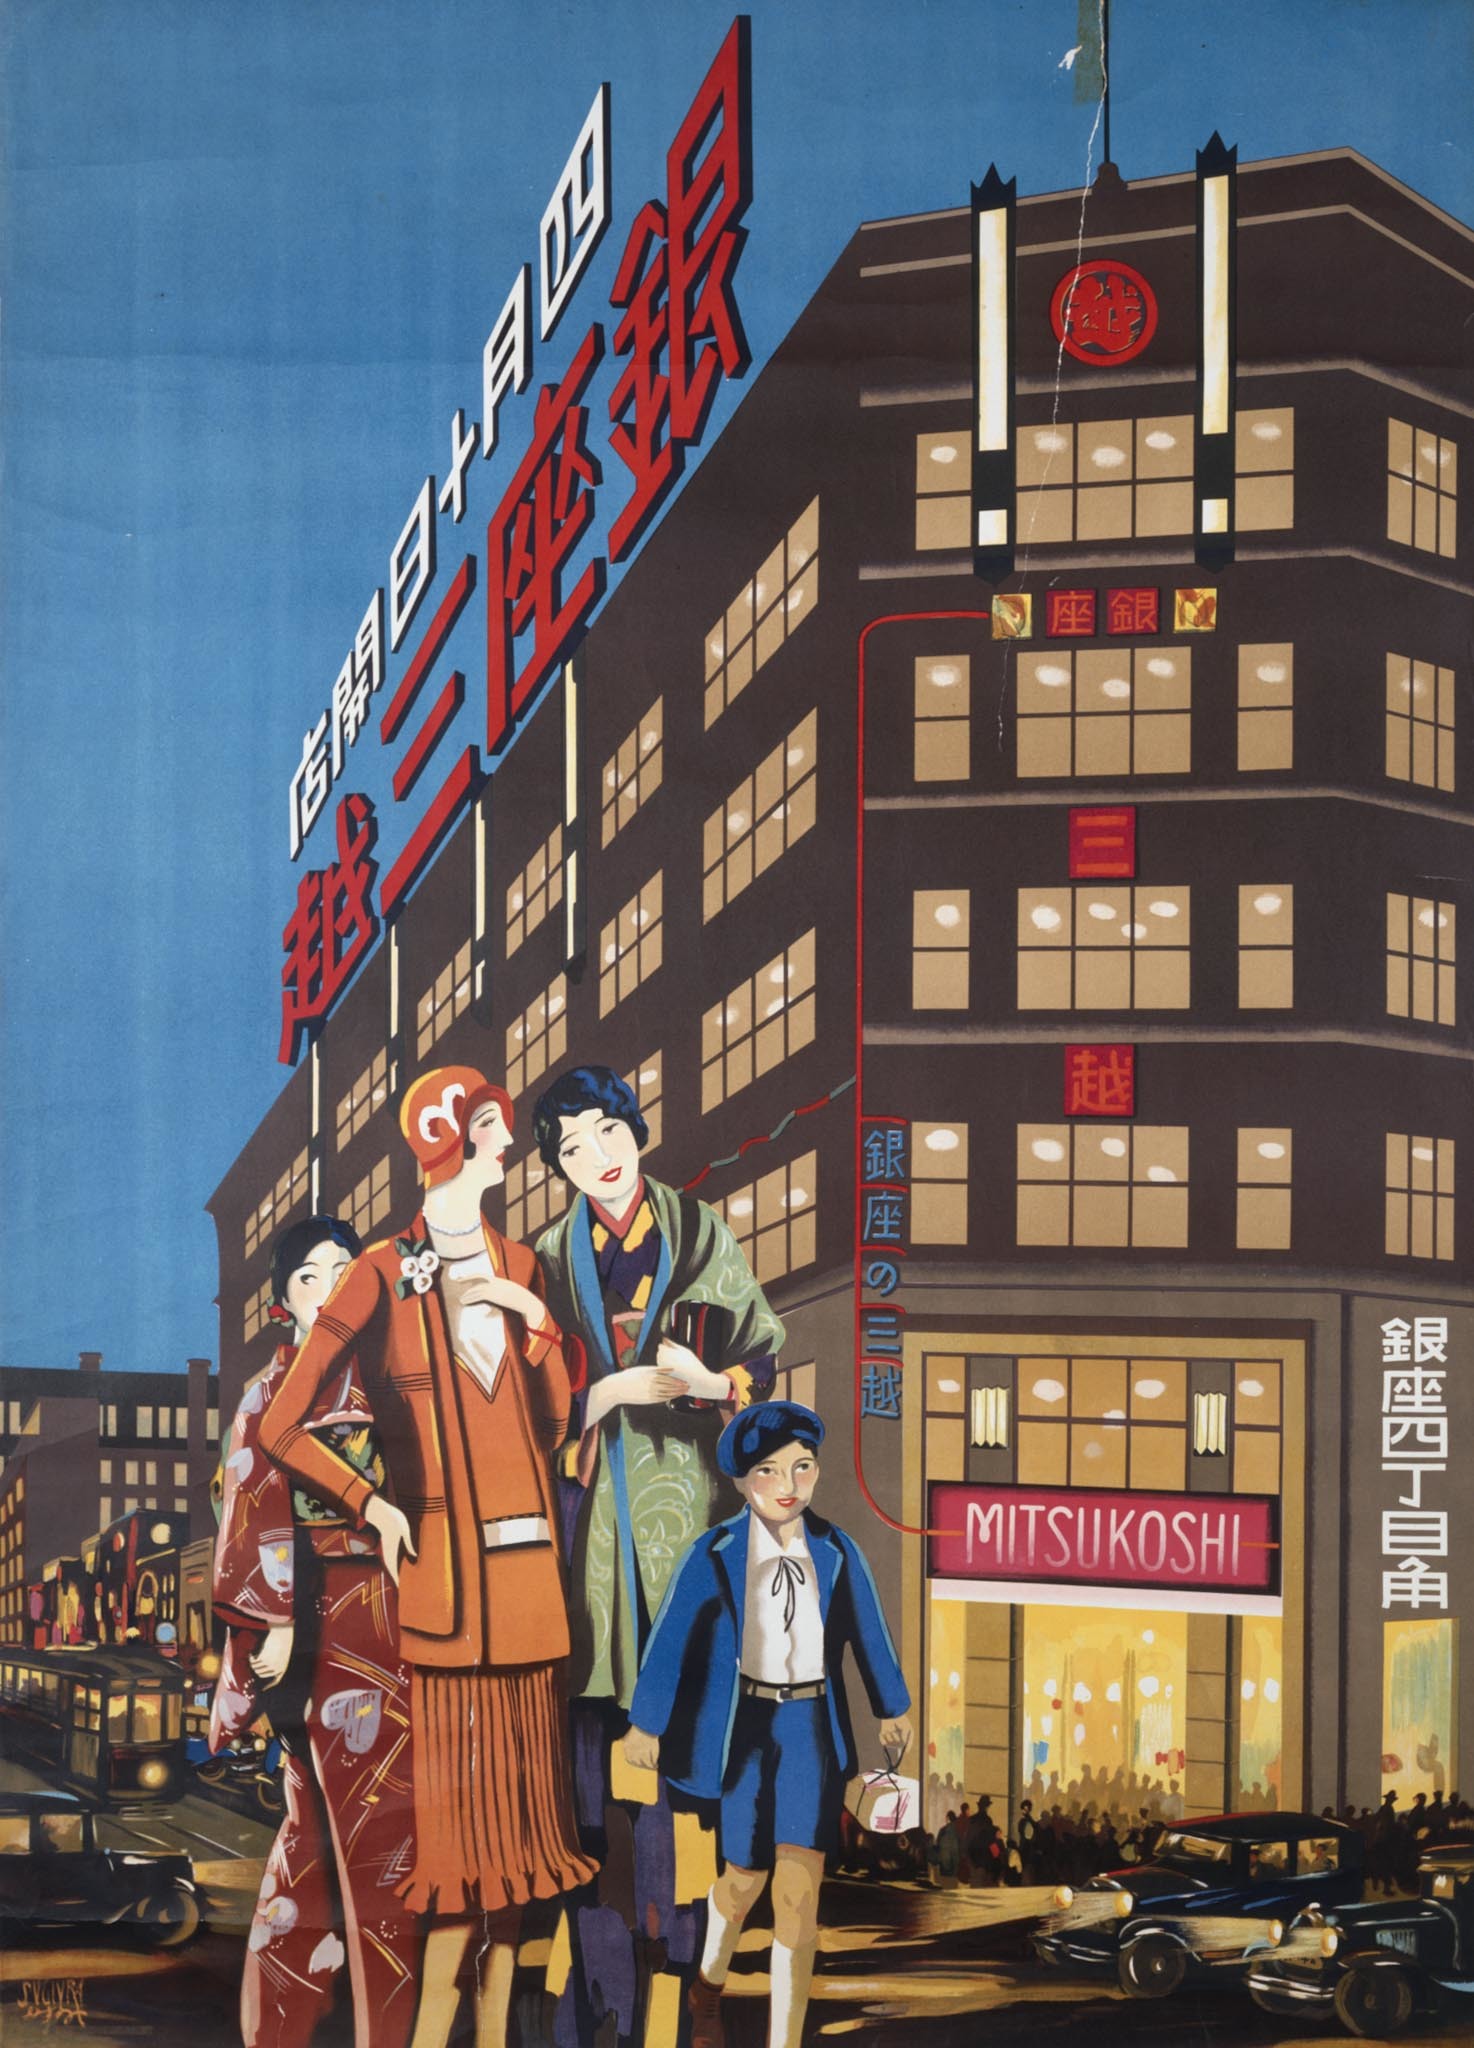 杉浦非水 《銀座三越四月十日開店》 1930年 東京国立近代美術館蔵